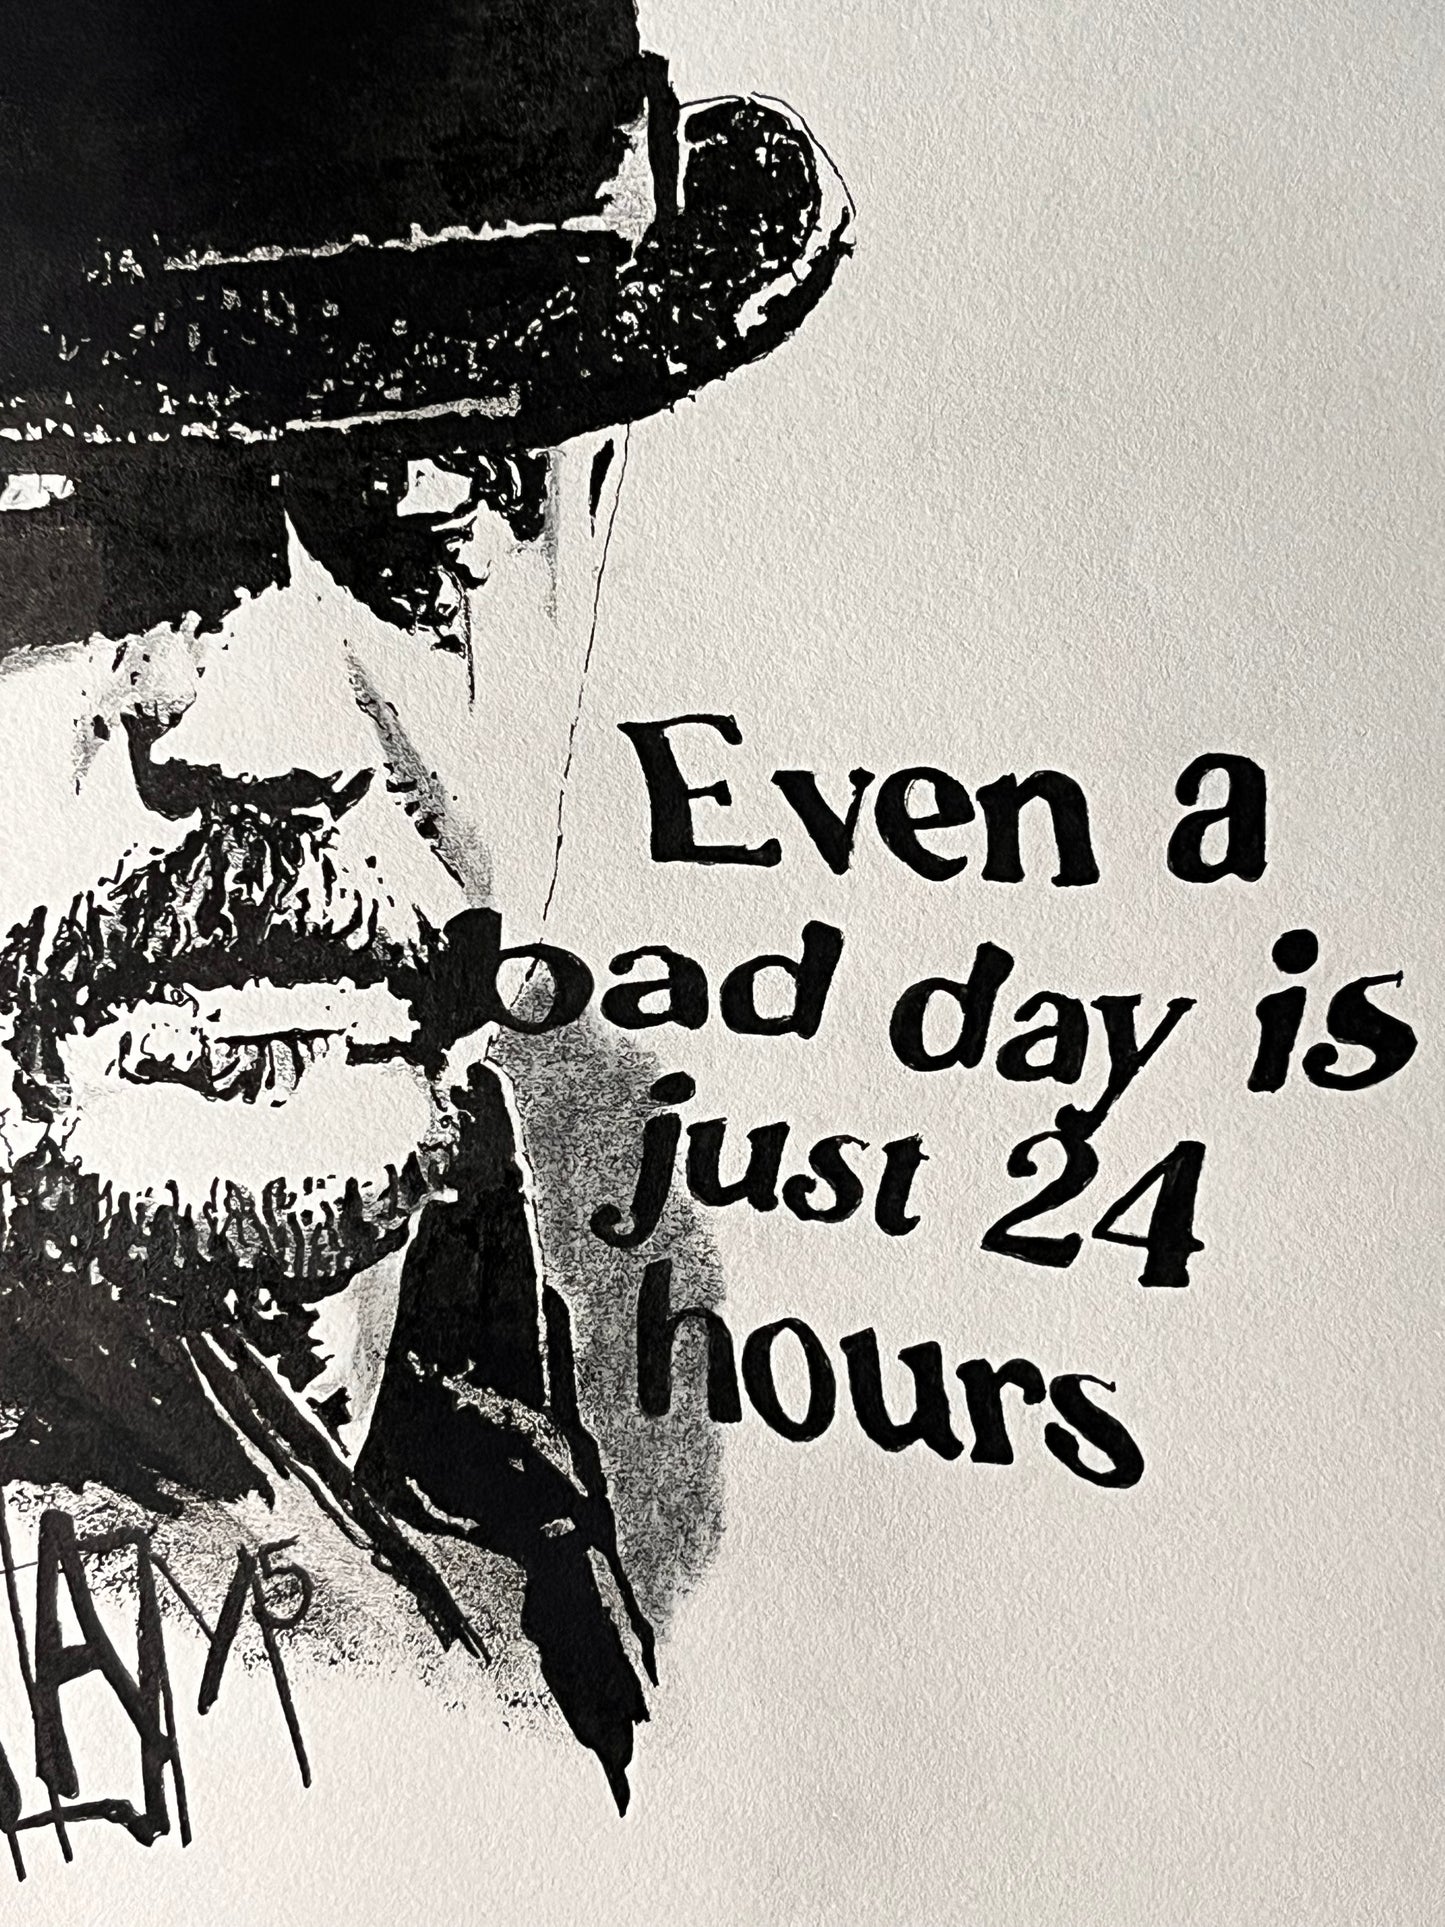 "Tom Hardy - Bad Day" Originalkunstwerk mit Zertifkat